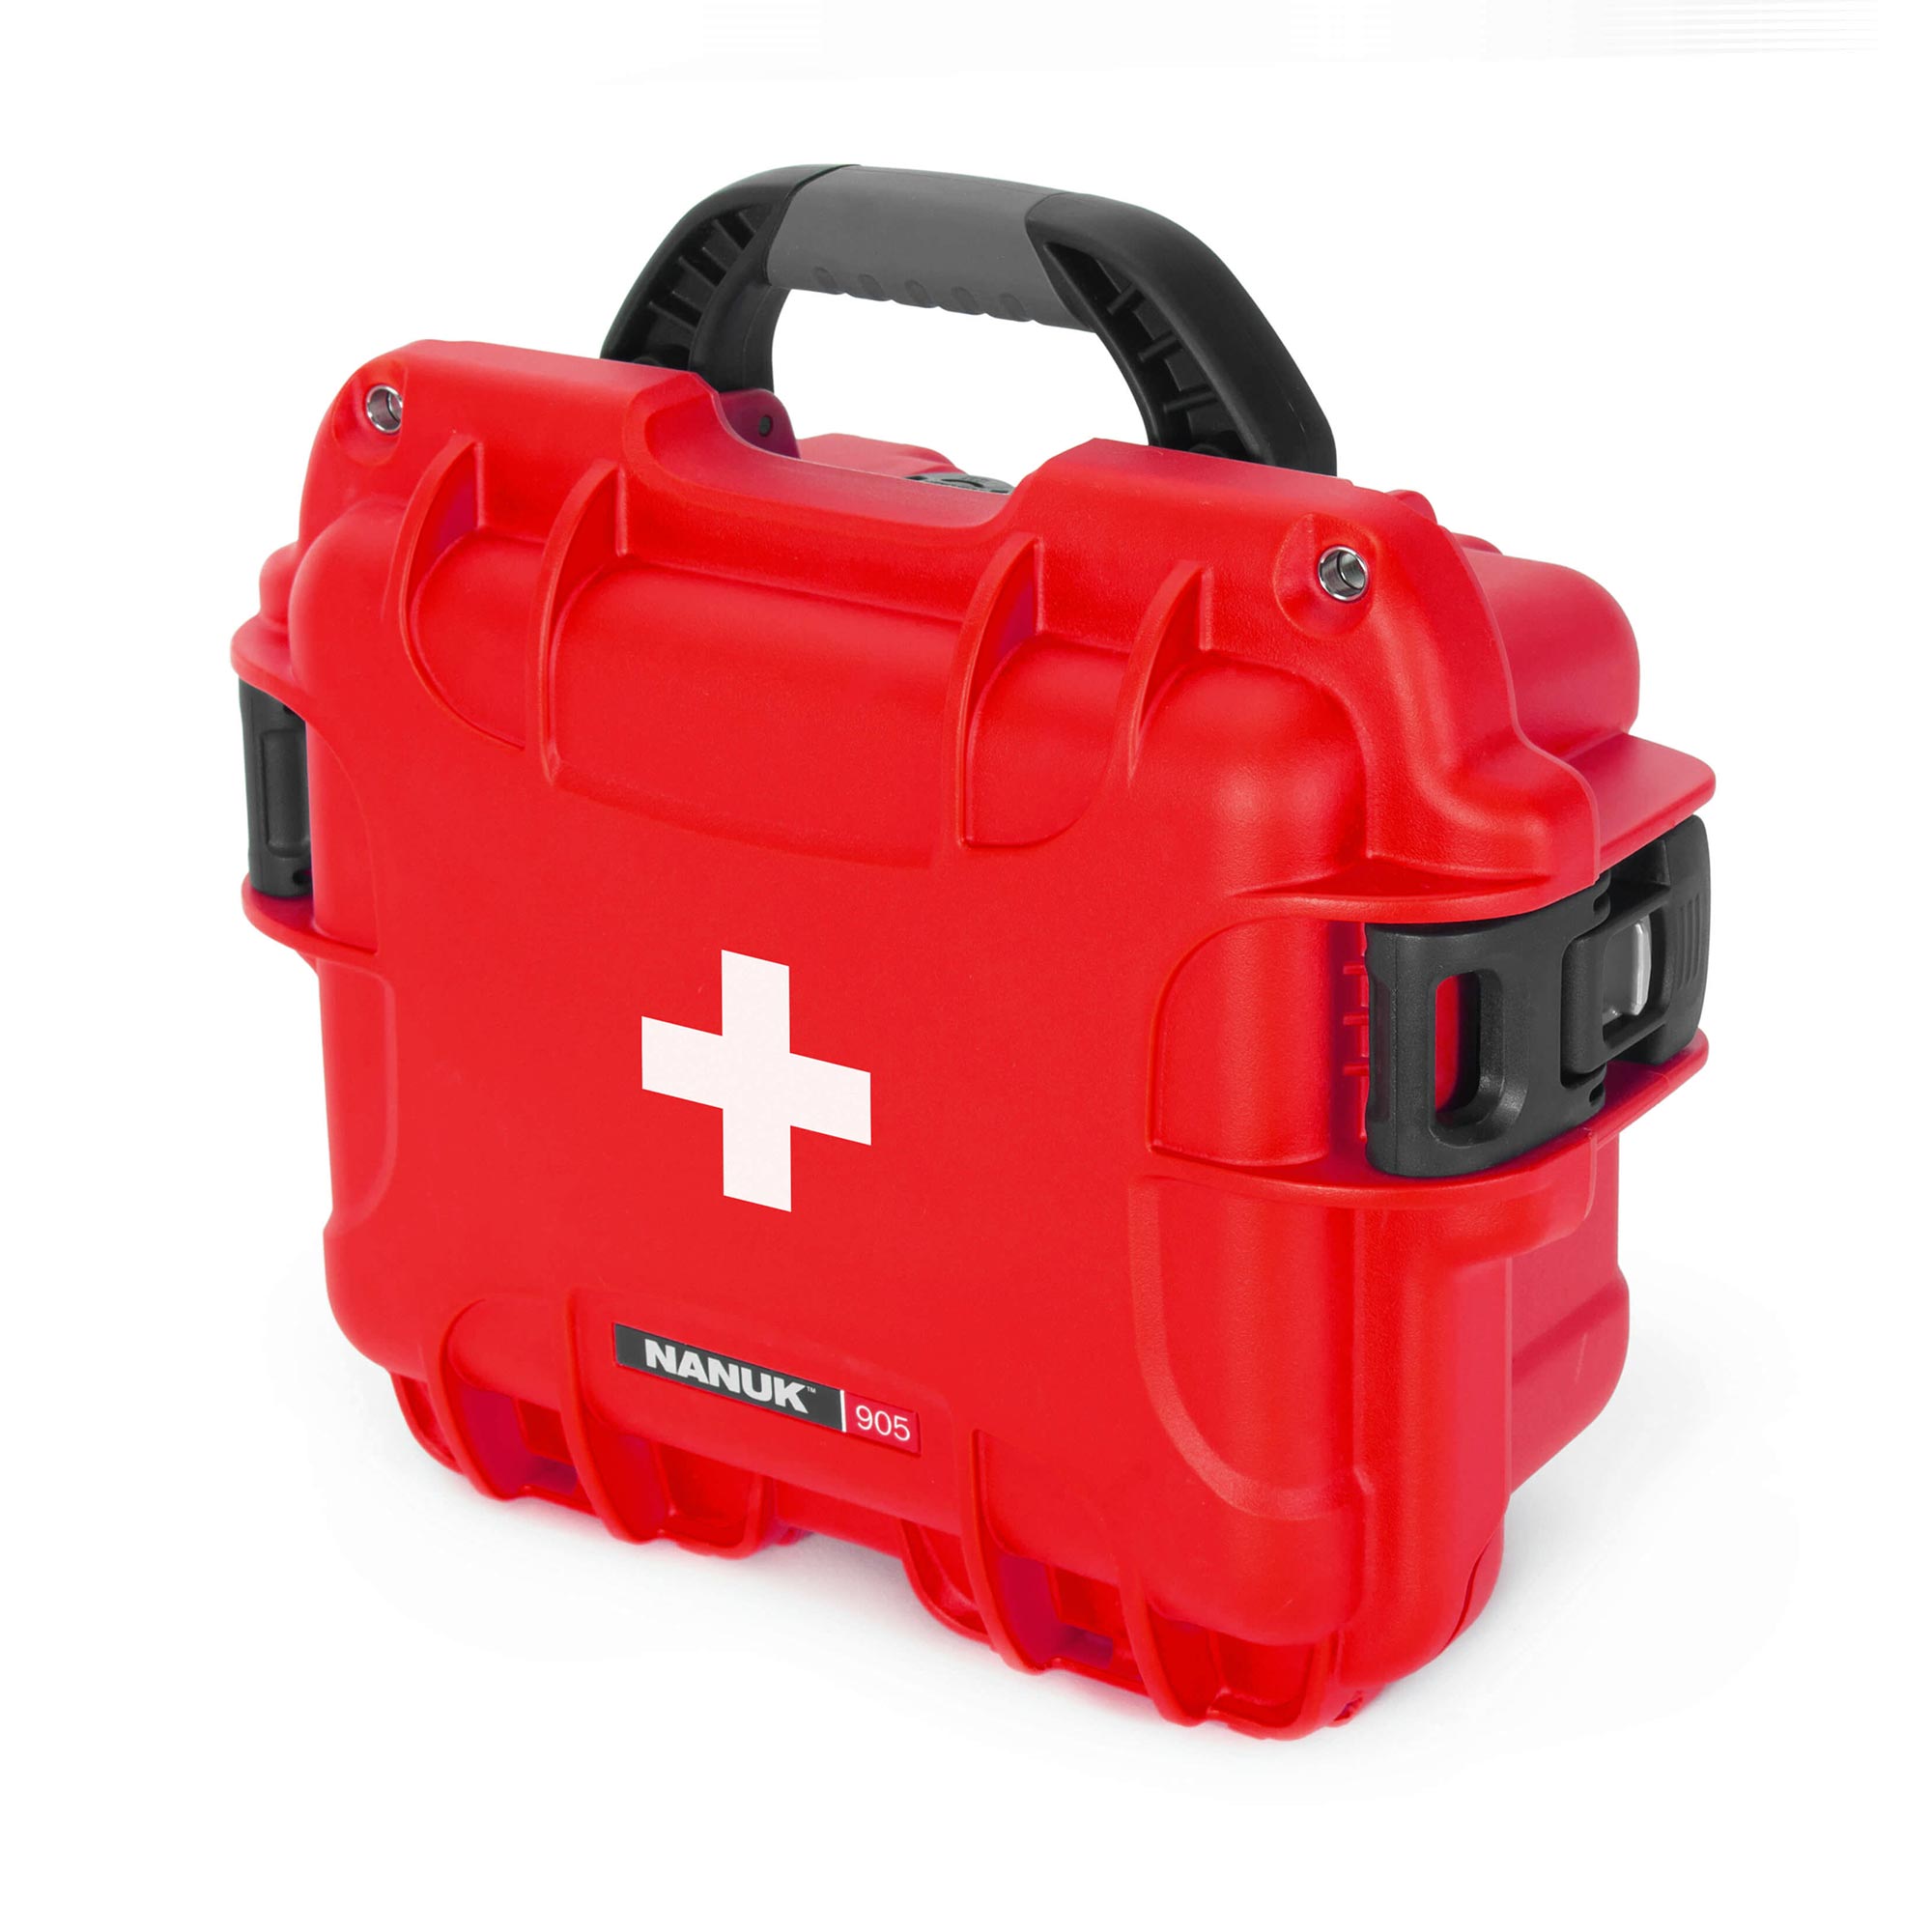 NANUK 905 mallette de premiers secours - valise extérieur - Rouge - NANUK